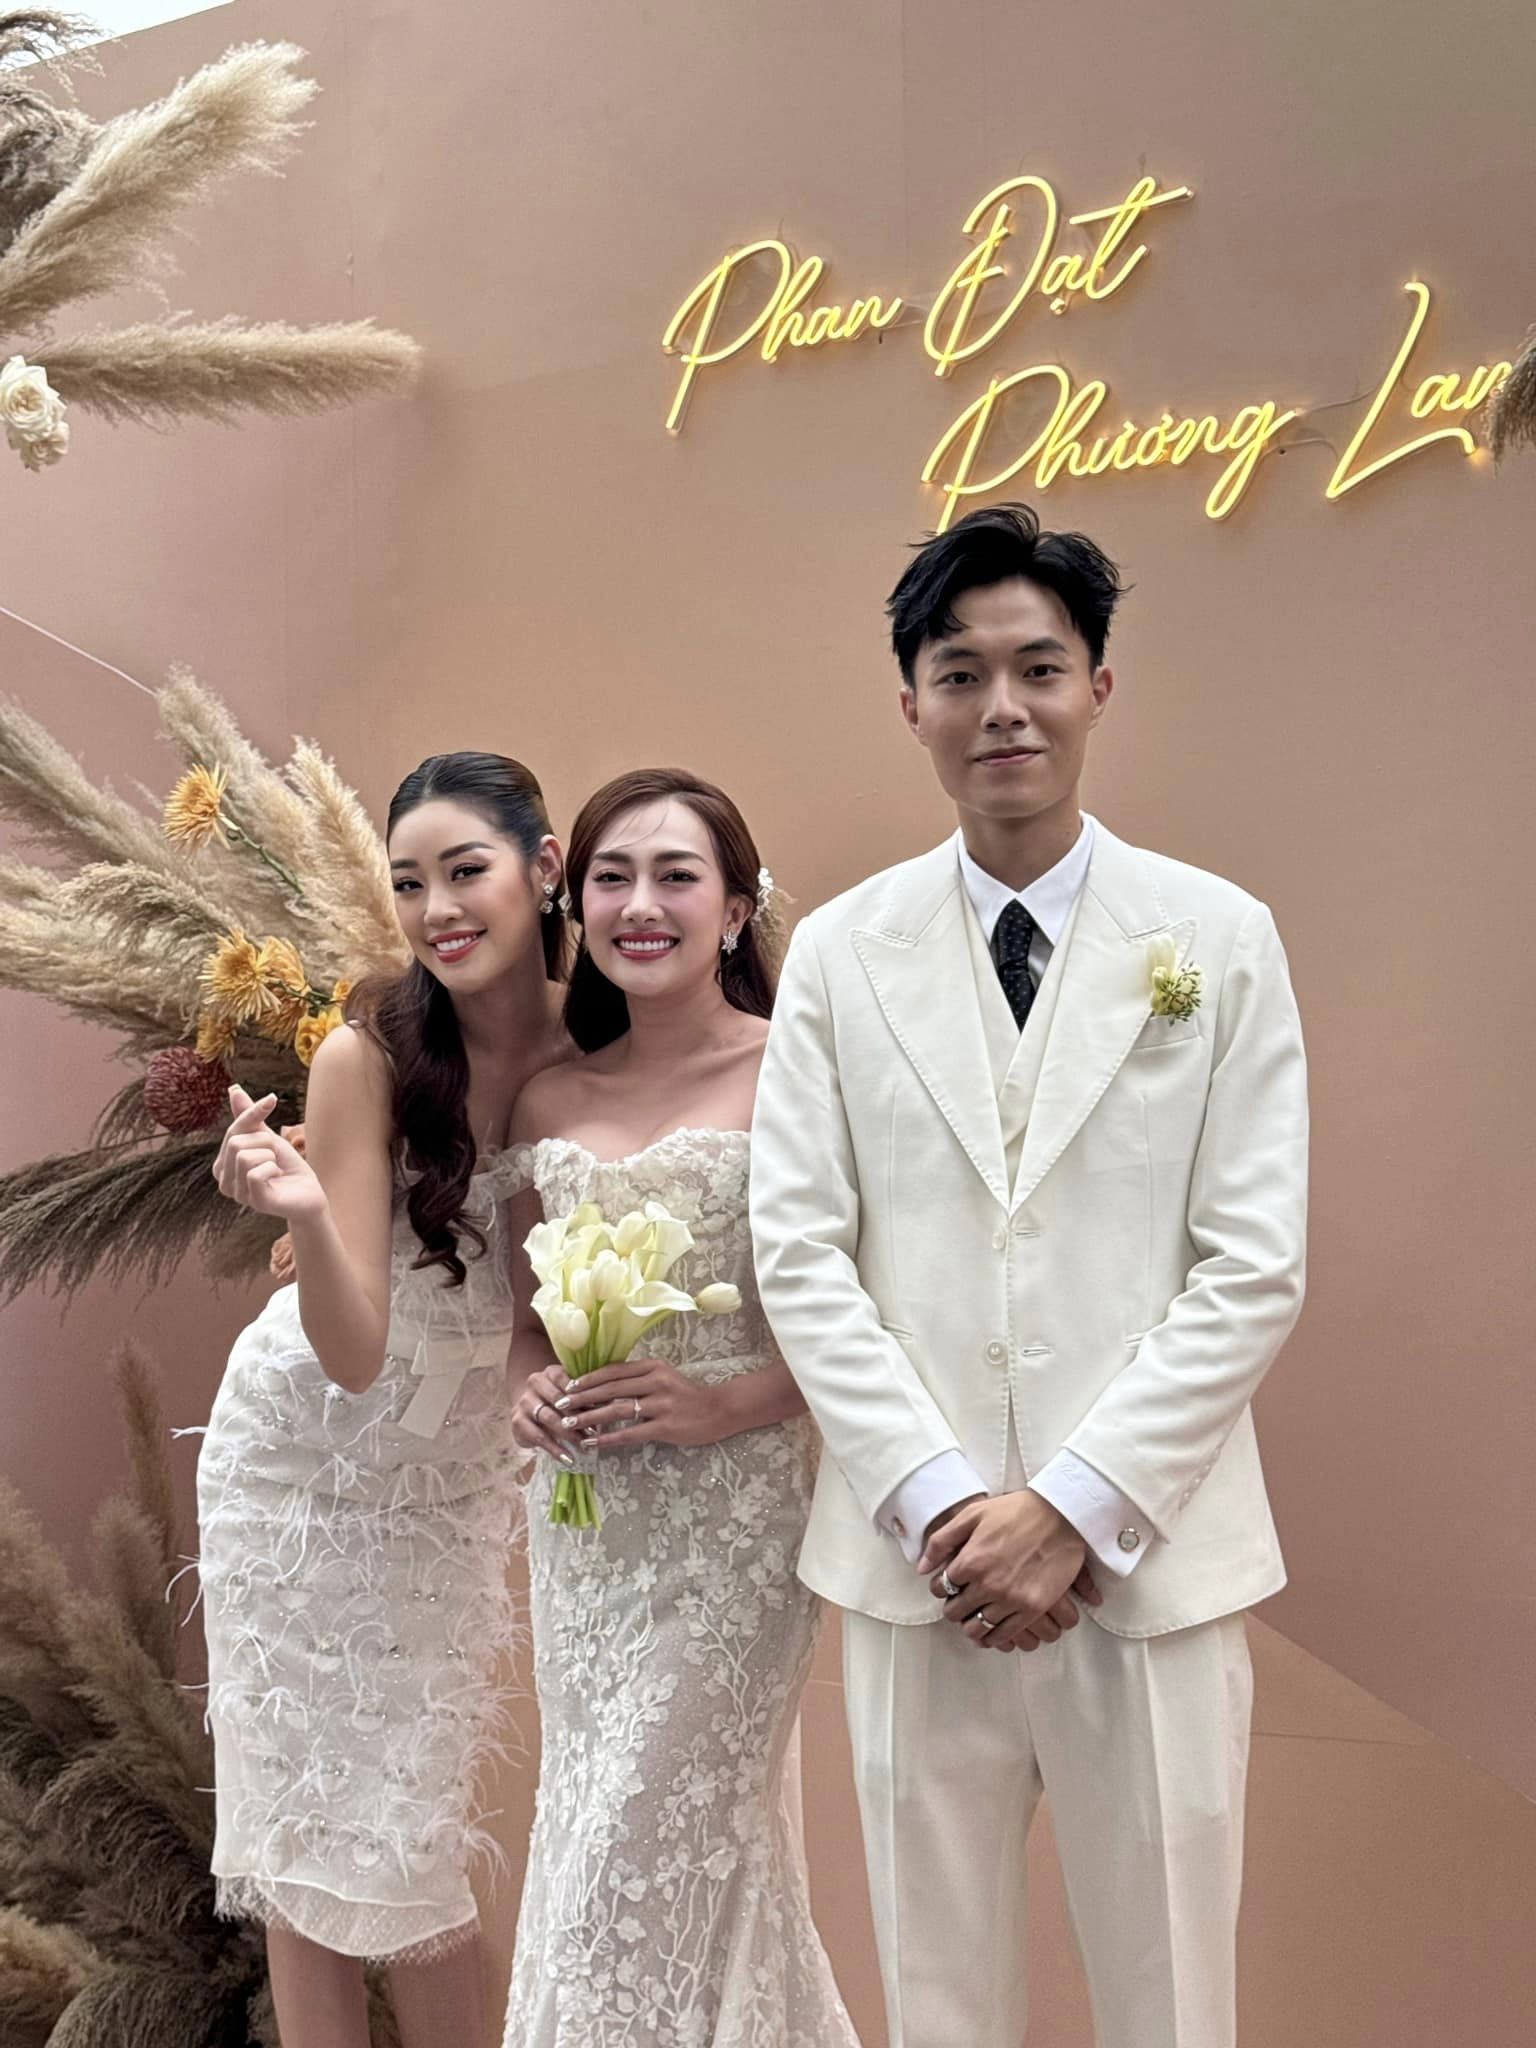 'Vợ chồng son' Puka và Gin Tuấn Kiệt dự đám cưới Phương Lan, dàn sao Việt đình đám đến chúc phúc - ảnh 2